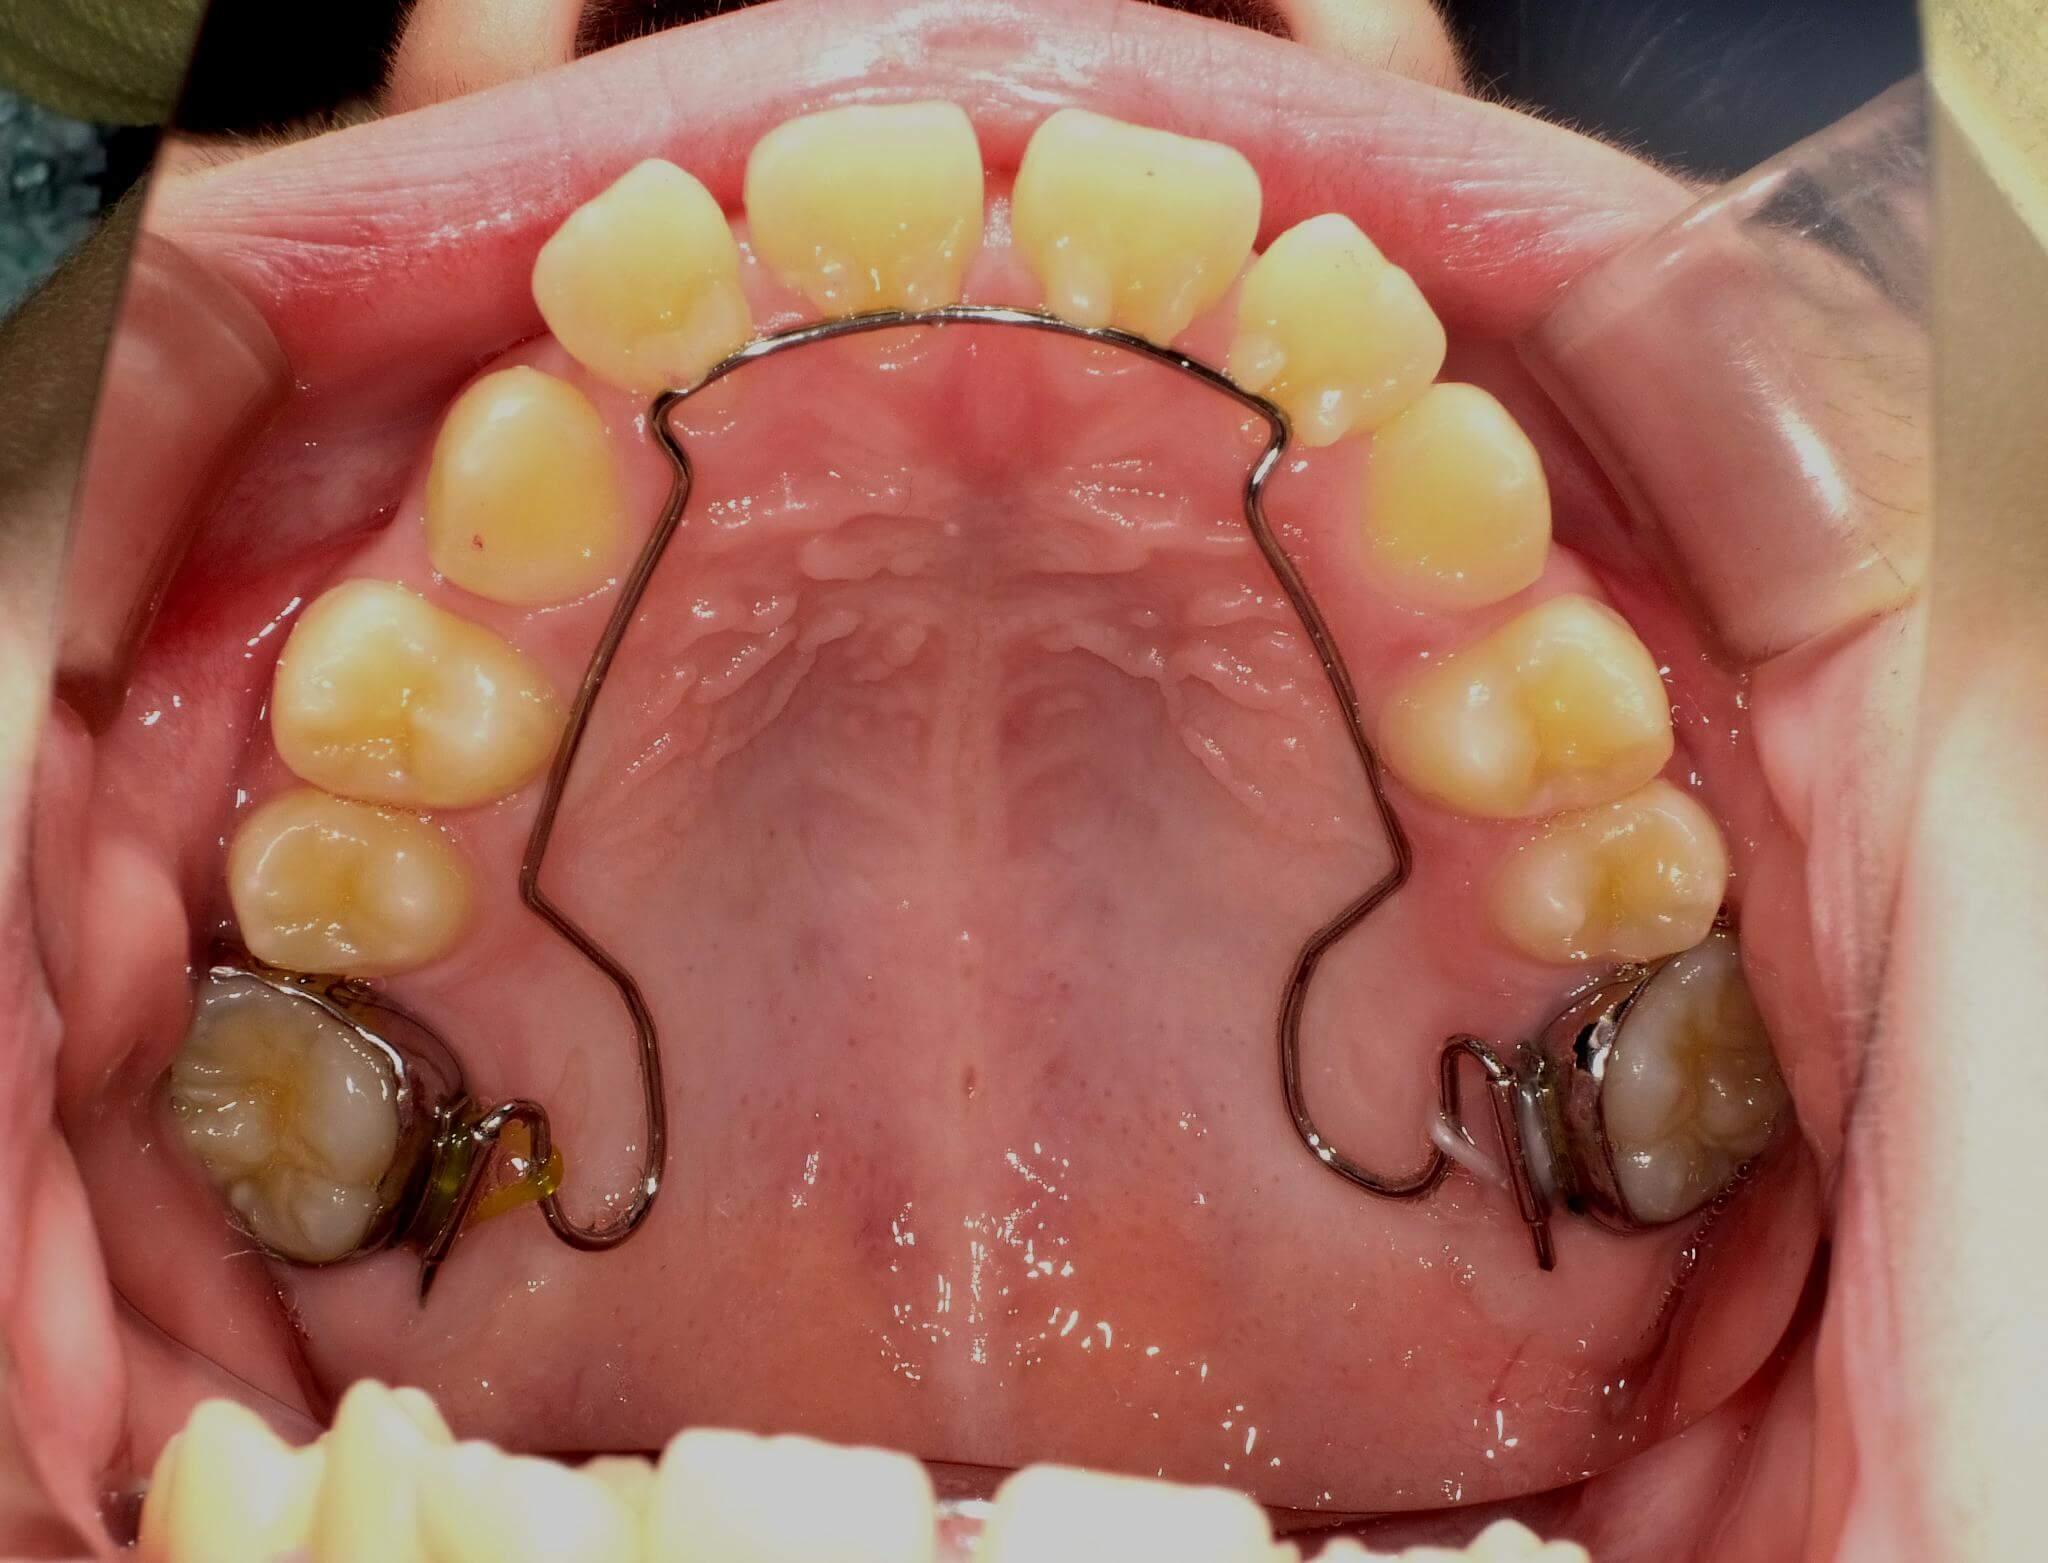 7か月目。BWSという装置で上あごを前方に成長させました。前歯に隙間ができ、一時的に出っ歯になります。